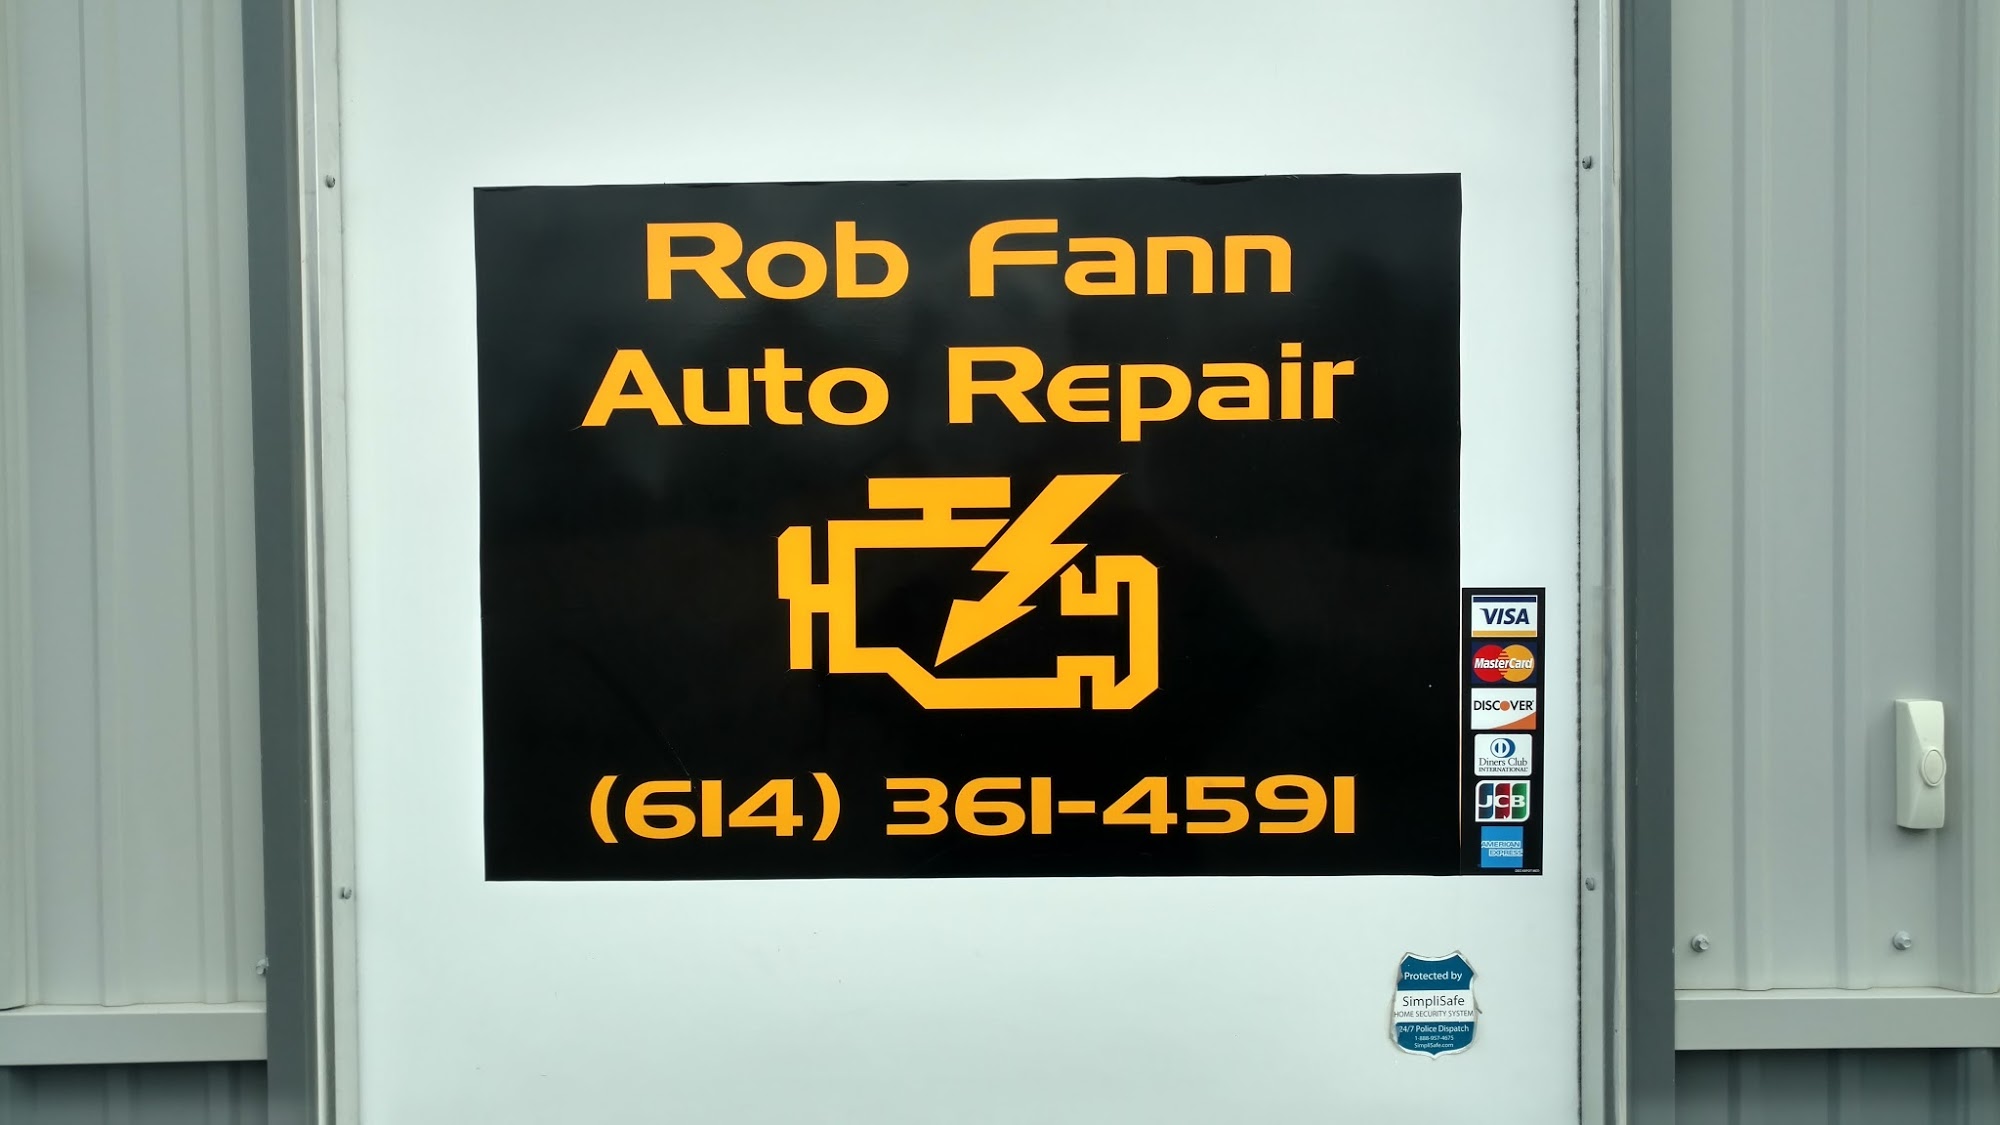 Rob Fann Auto Repair